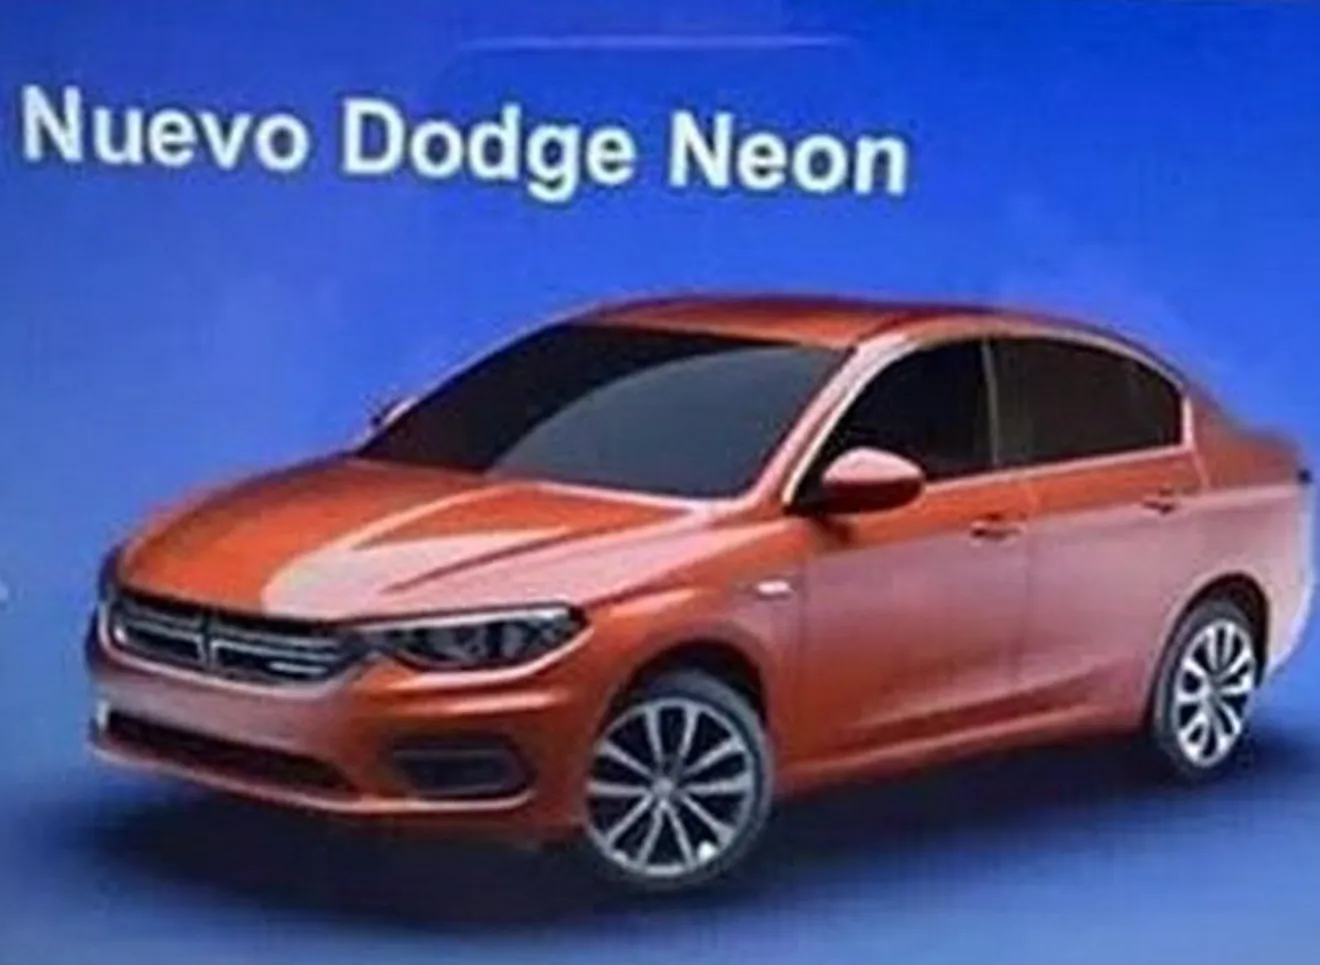 El Fiat Tipo sedán se convertirá en el nuevo Dodge Neon para México